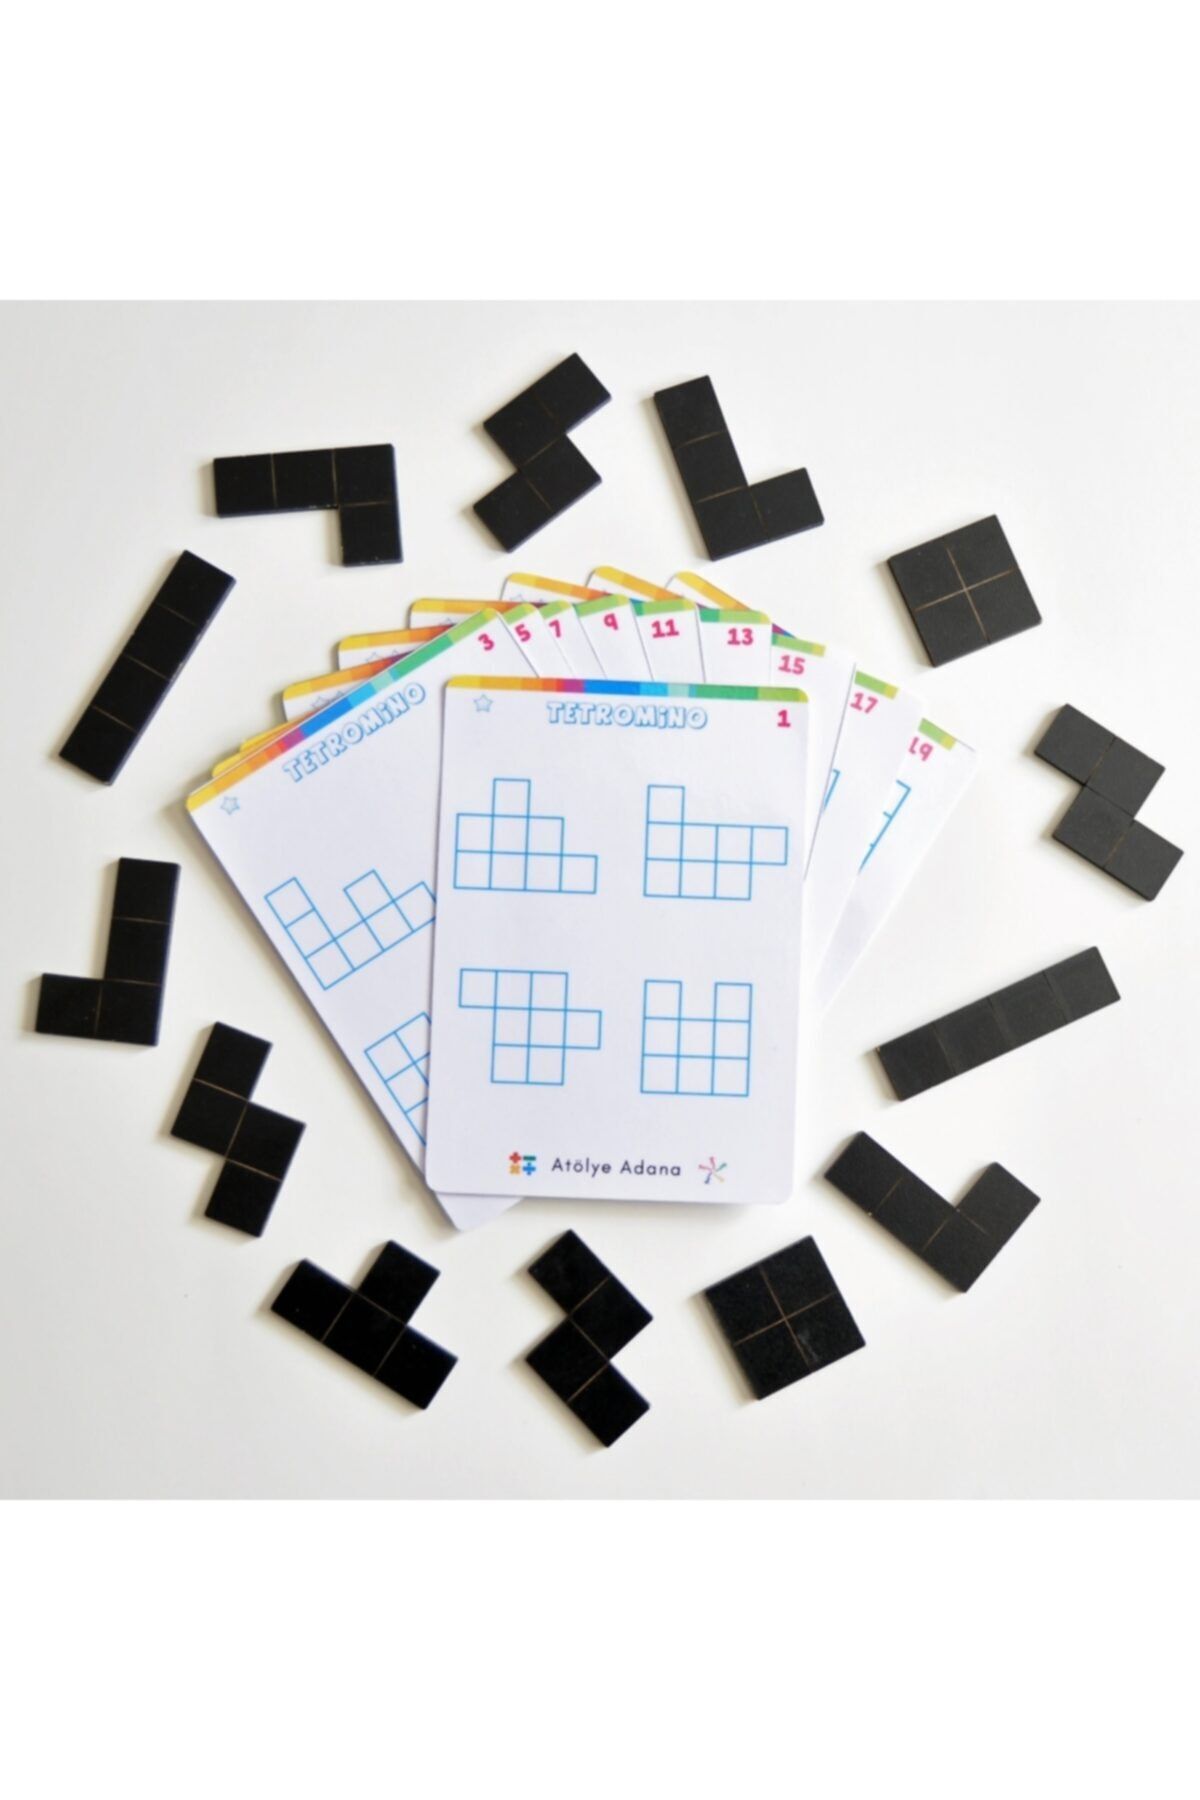 AtölyeAdana Tetromino Oyunu - Matematik Akıl Zeka Strateji Mantık Beceri Gelişim Eğitici Eğlenceli Oyun